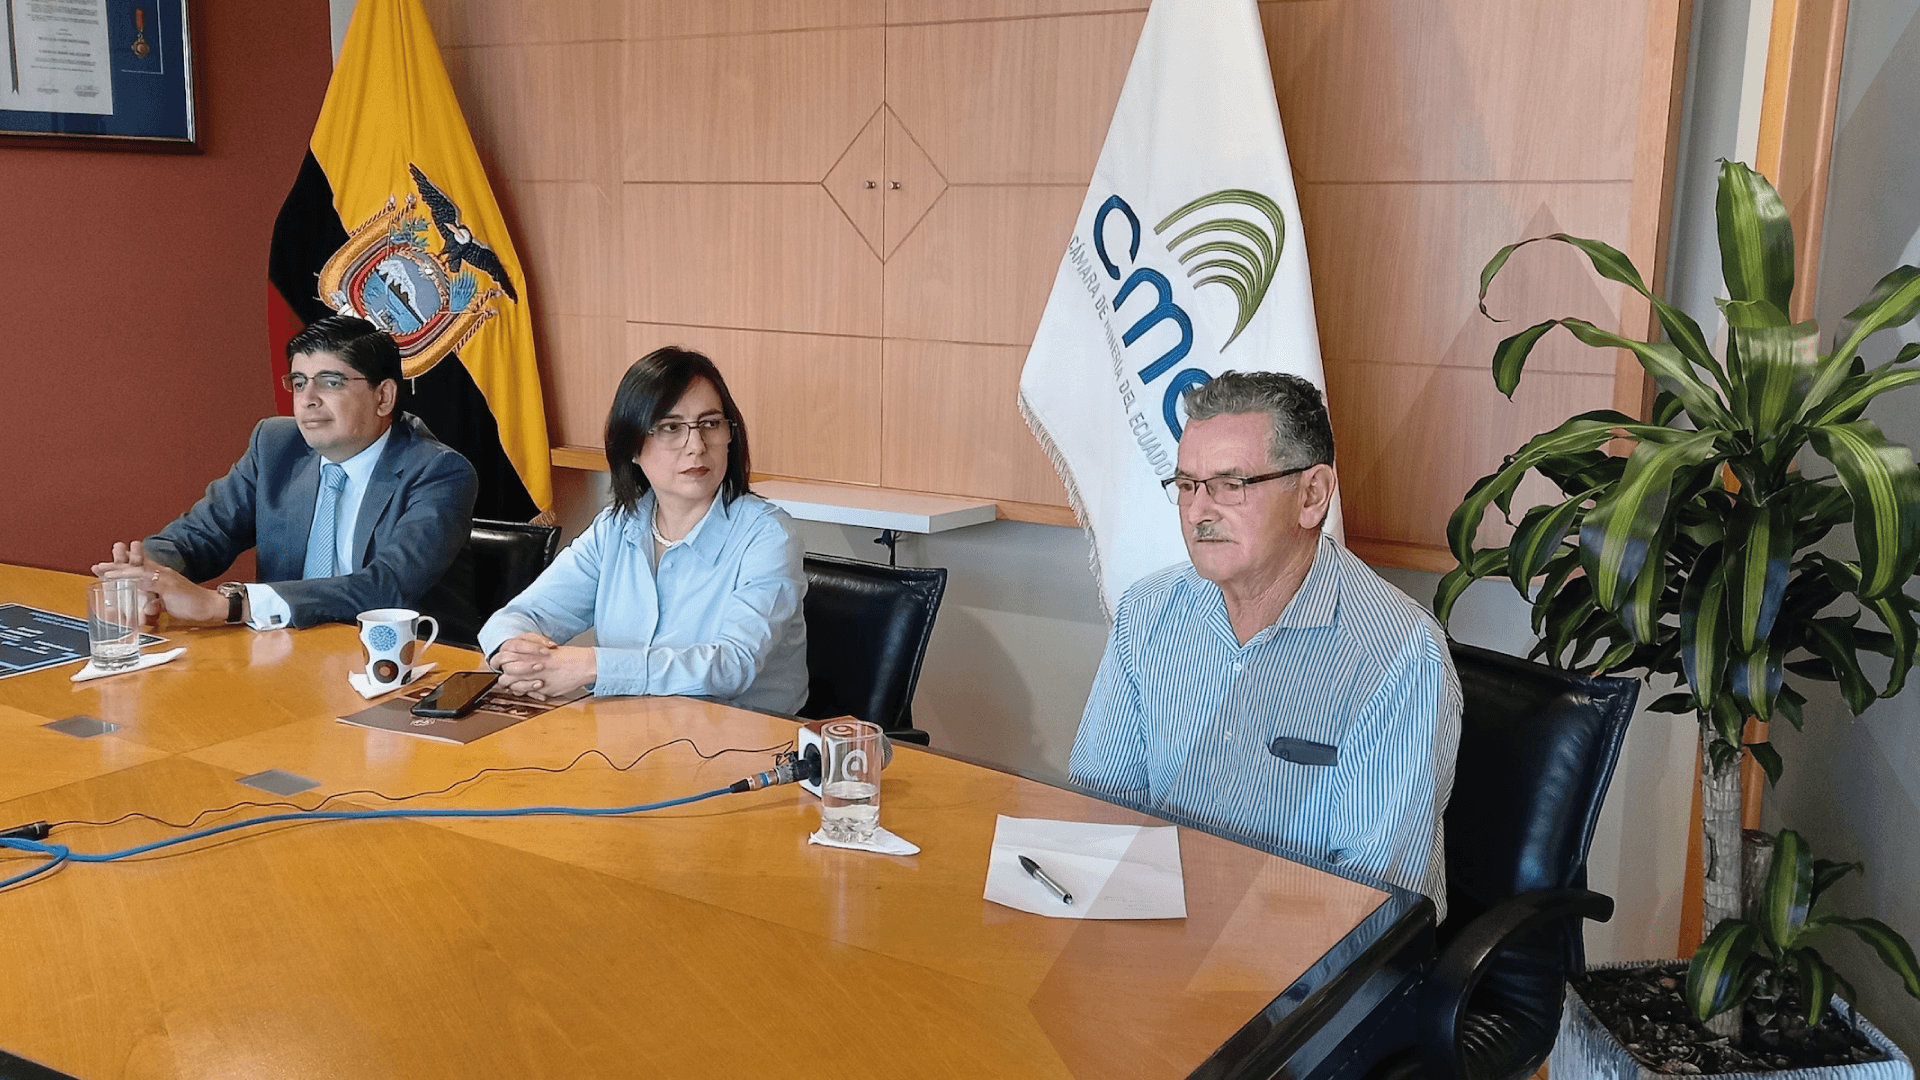 CÁMARA DE MINERÍA RECHAZA PEDIDOS DE FRENAR LA INDUSTRIA MINERA EN ECUADOR